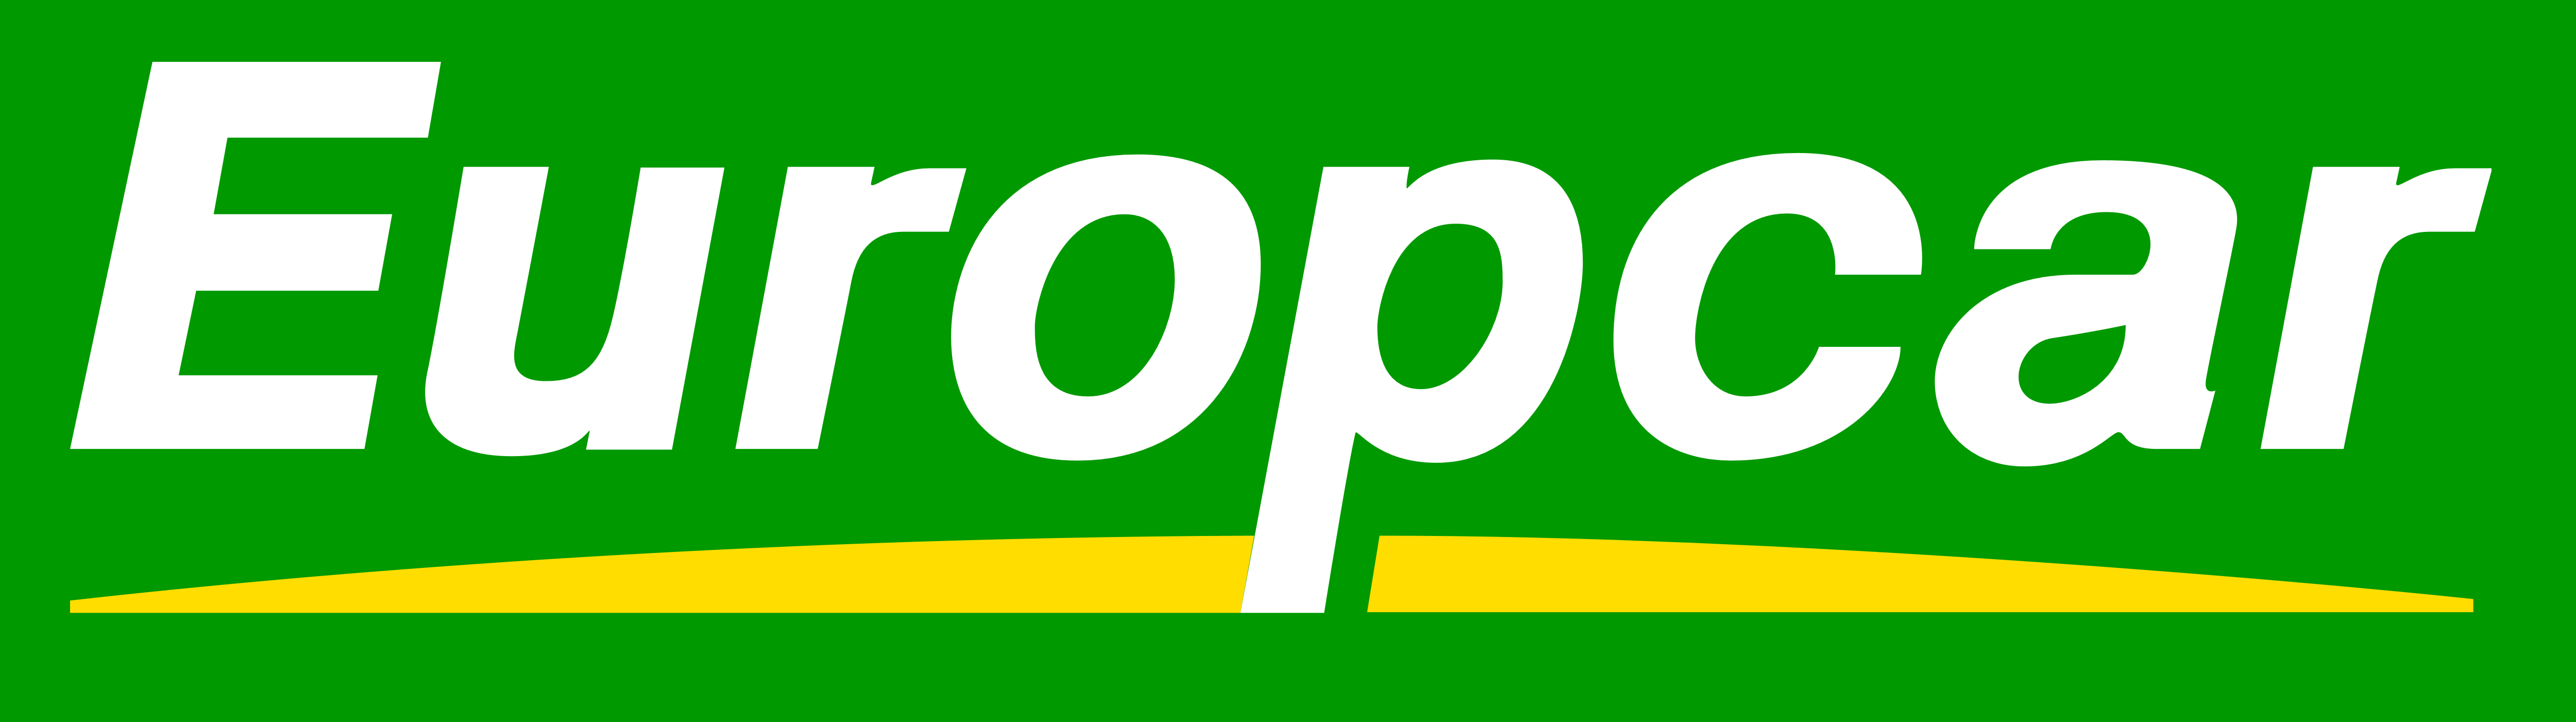 Europcar Logo - Europcar – Logos Download